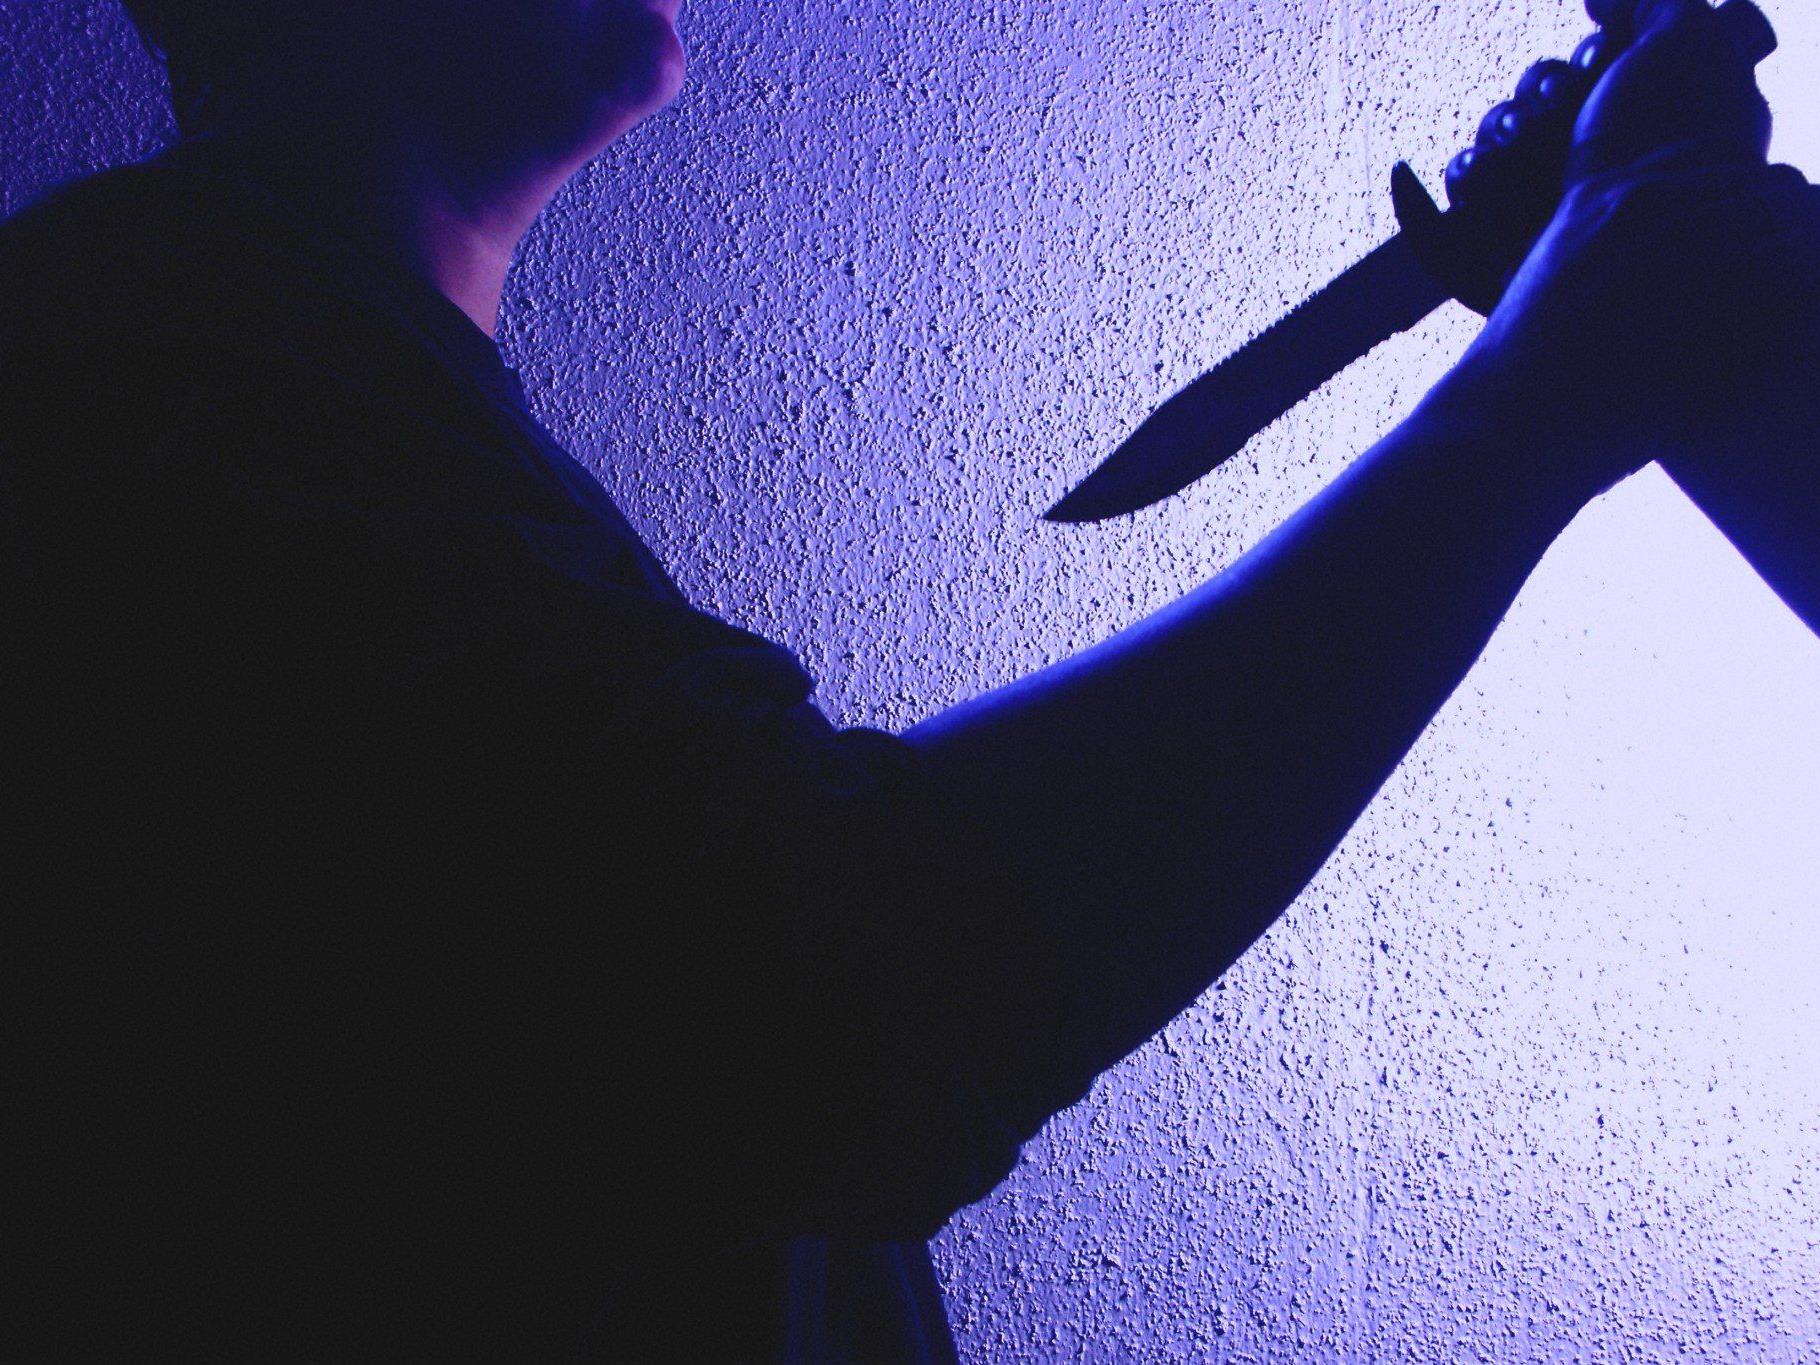 Mit einem Messer ging eine Frau auf ihren Lebensgefährten los